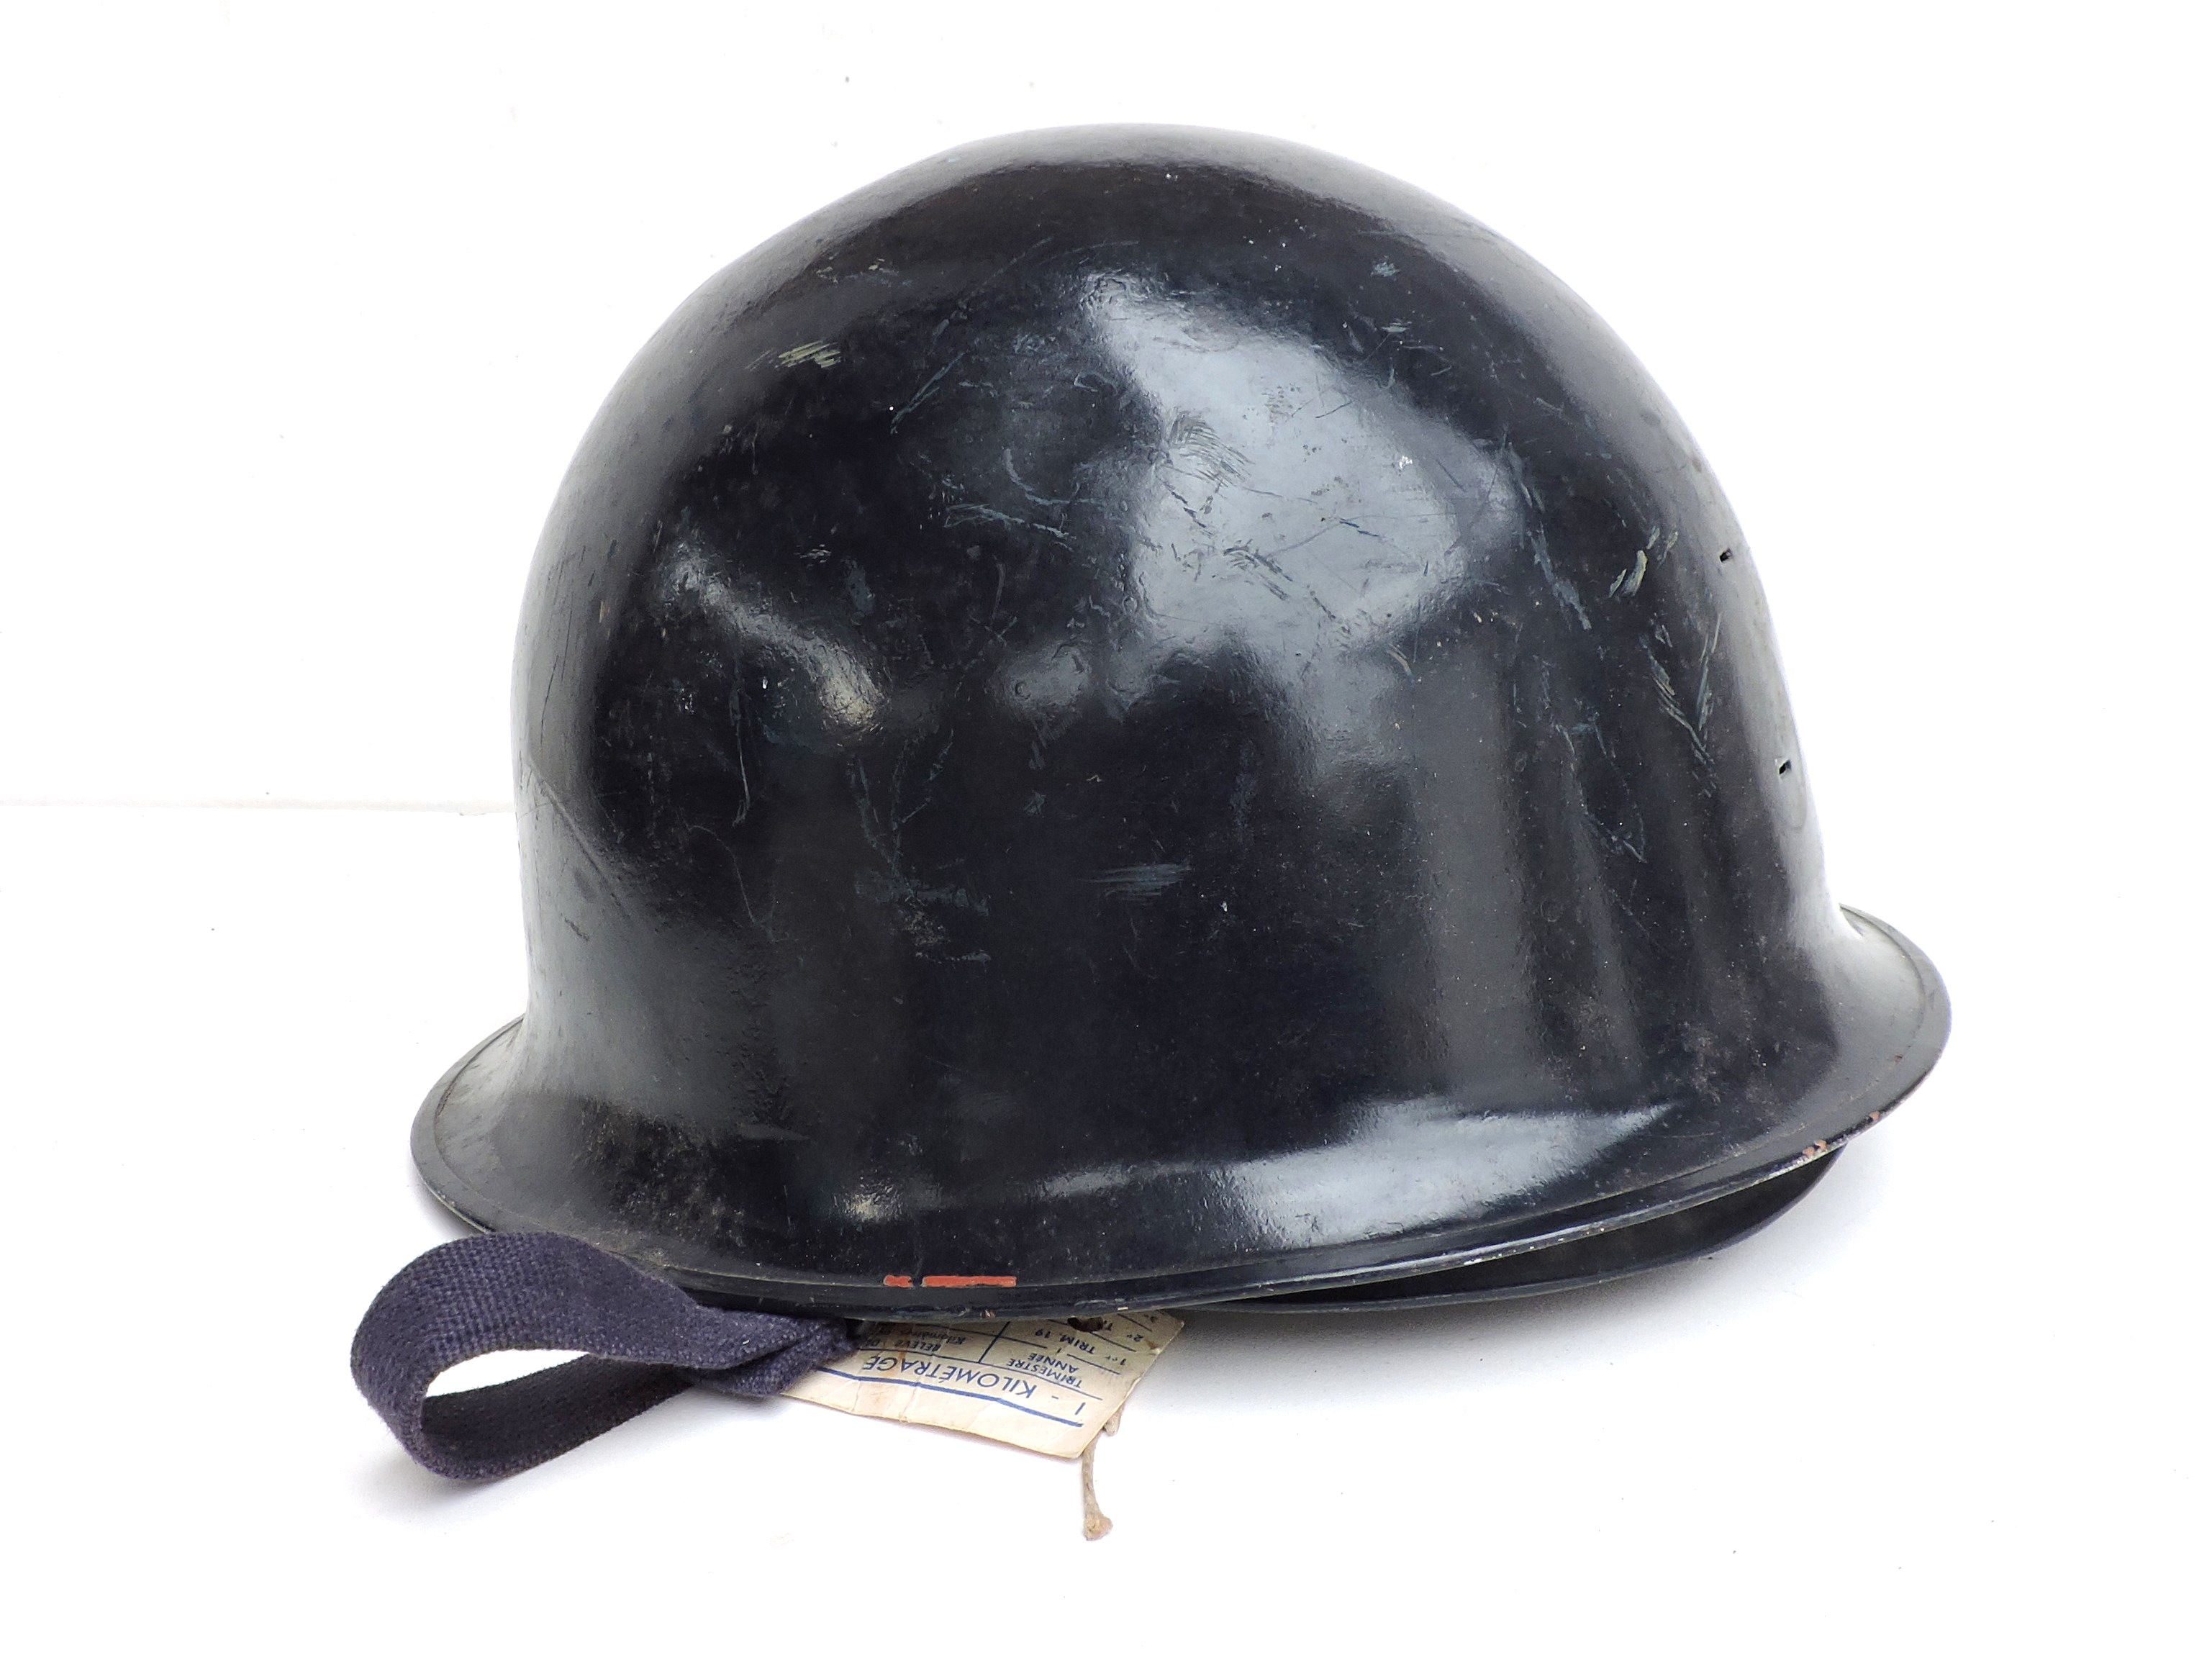 French helmet Mle 51 Gendarmerie